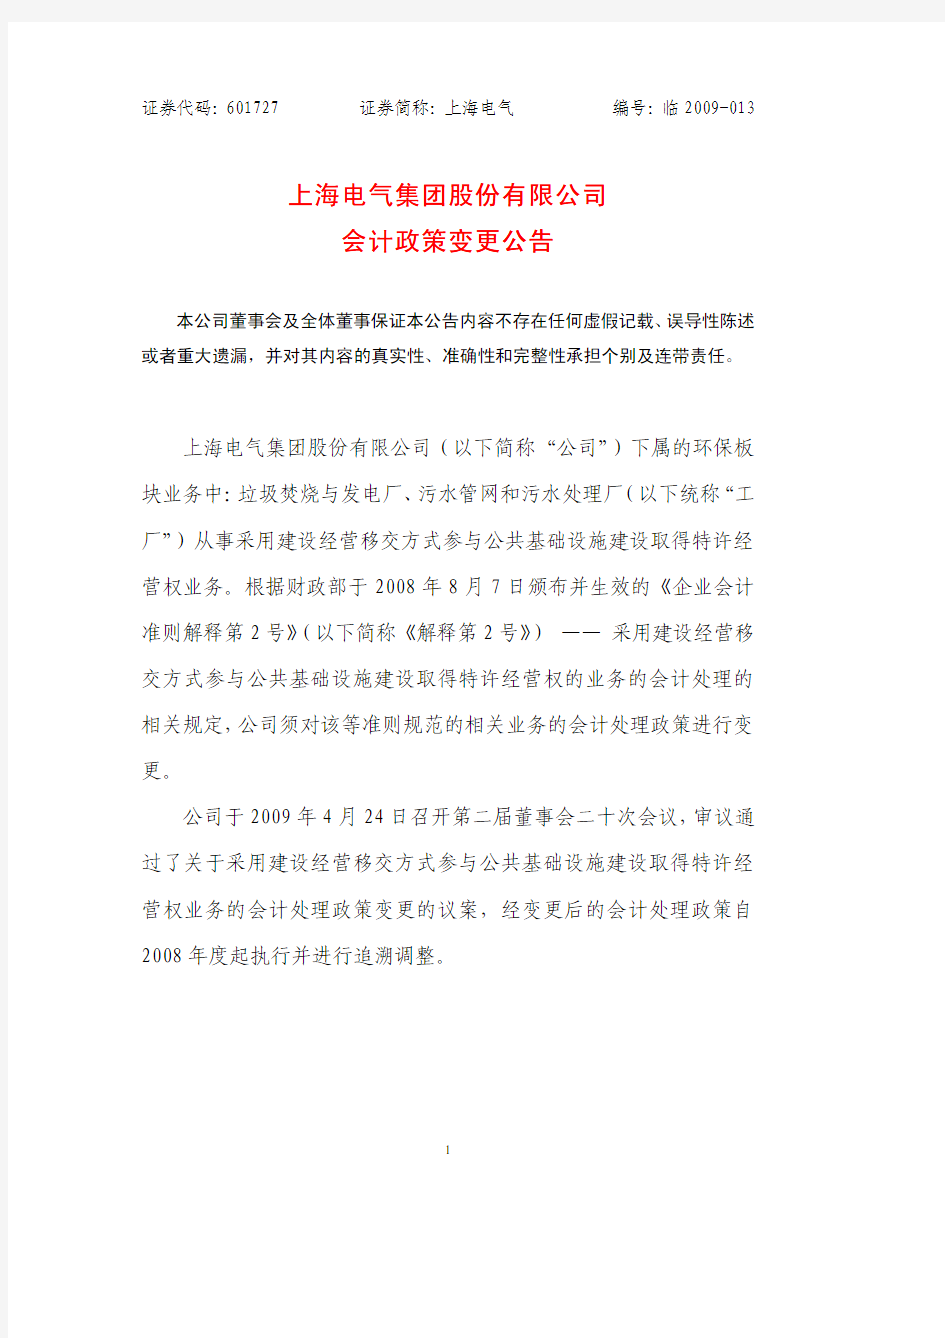 上海电气集团股份有限公司上海电气集团股份有限公司会计政策变更